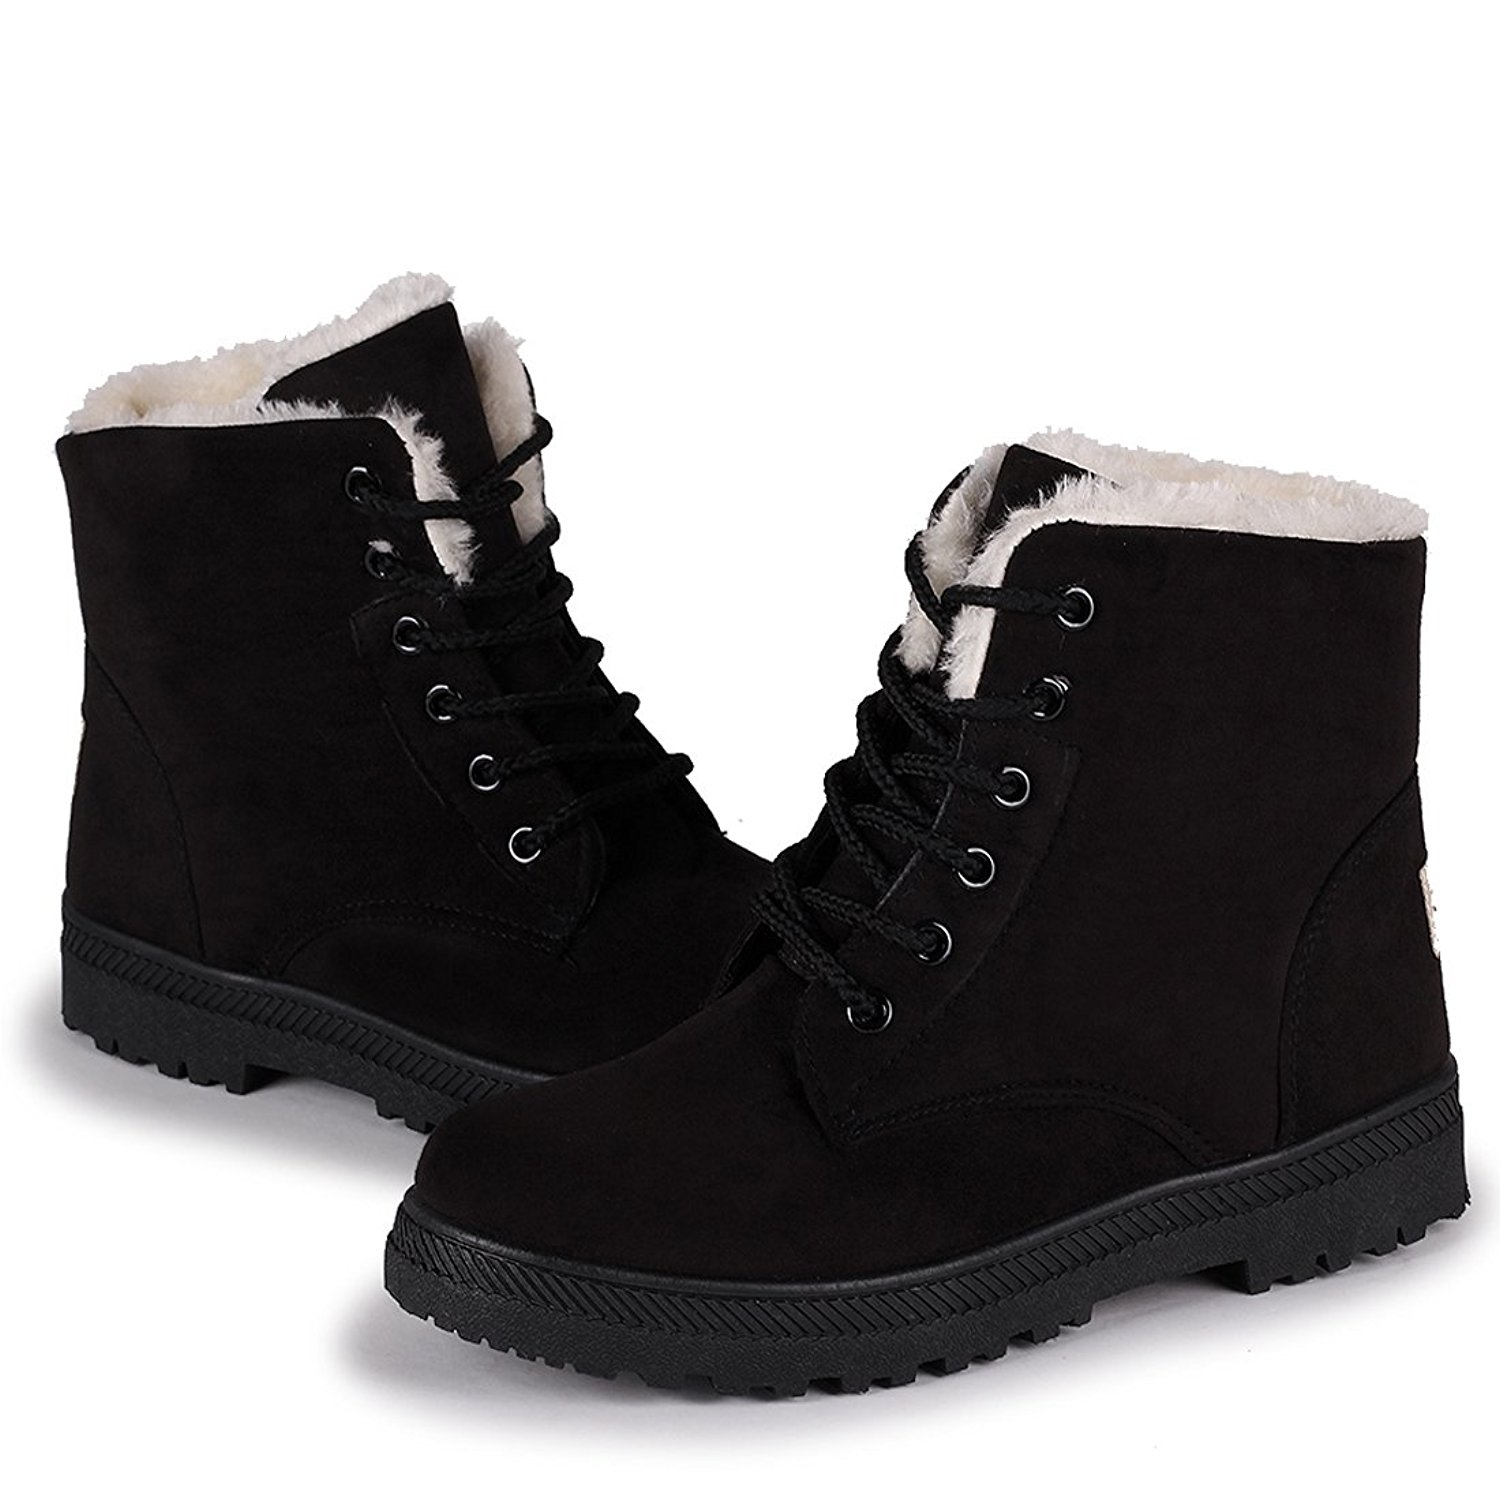 women winter boots amazon.com | susanny suede flat platform sneaker shoes plus velvet winter  womenu0027s ylihgzk